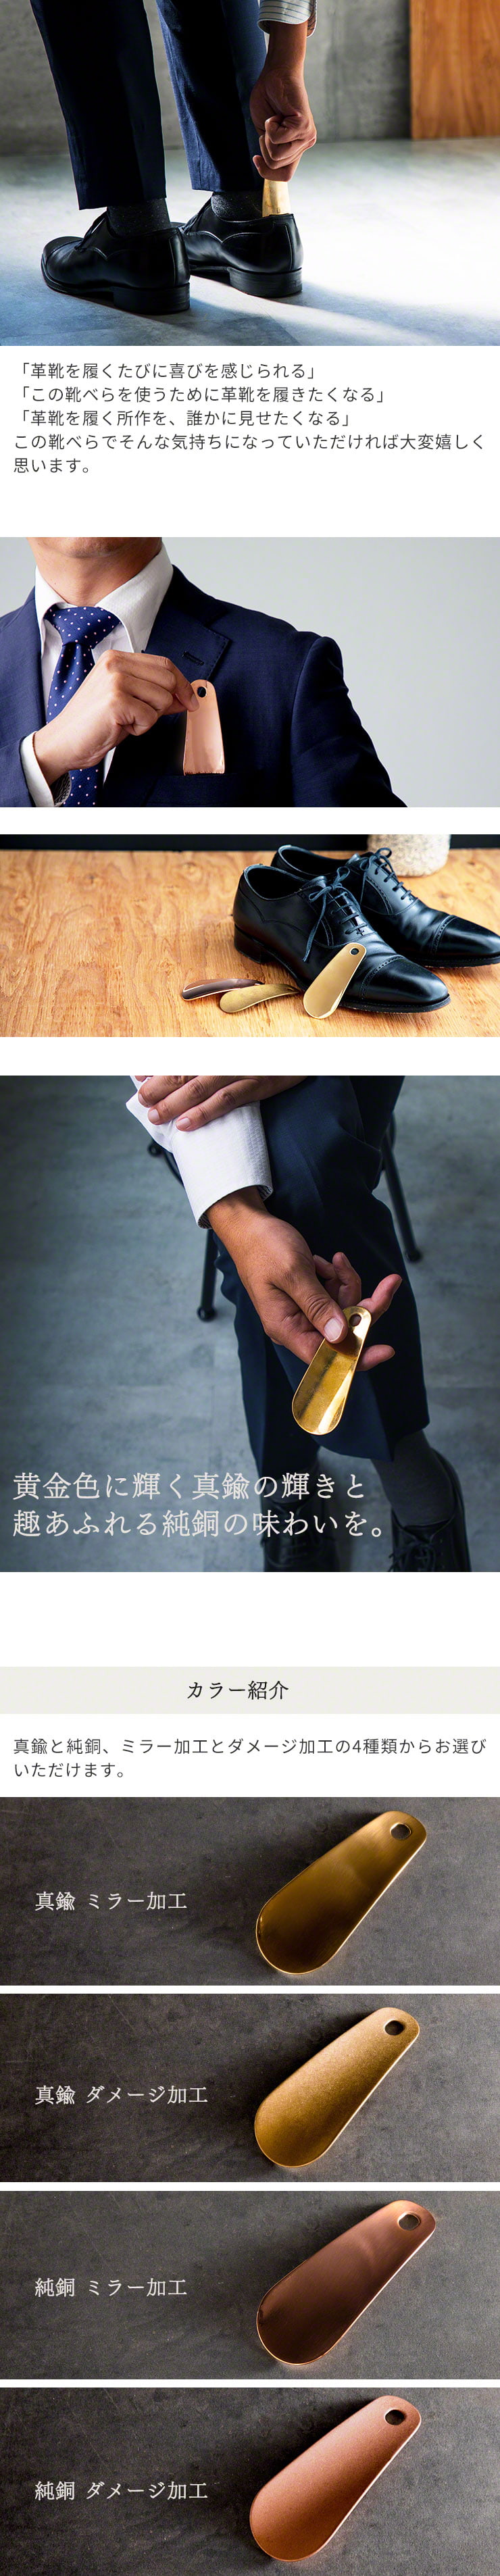 携帯用 靴べら nei 燕三条 ハンドメイド 職人 真鍮製 純銅製 ギフト シューホーン 日本製 メイドインツバメ MADEINJAPAN